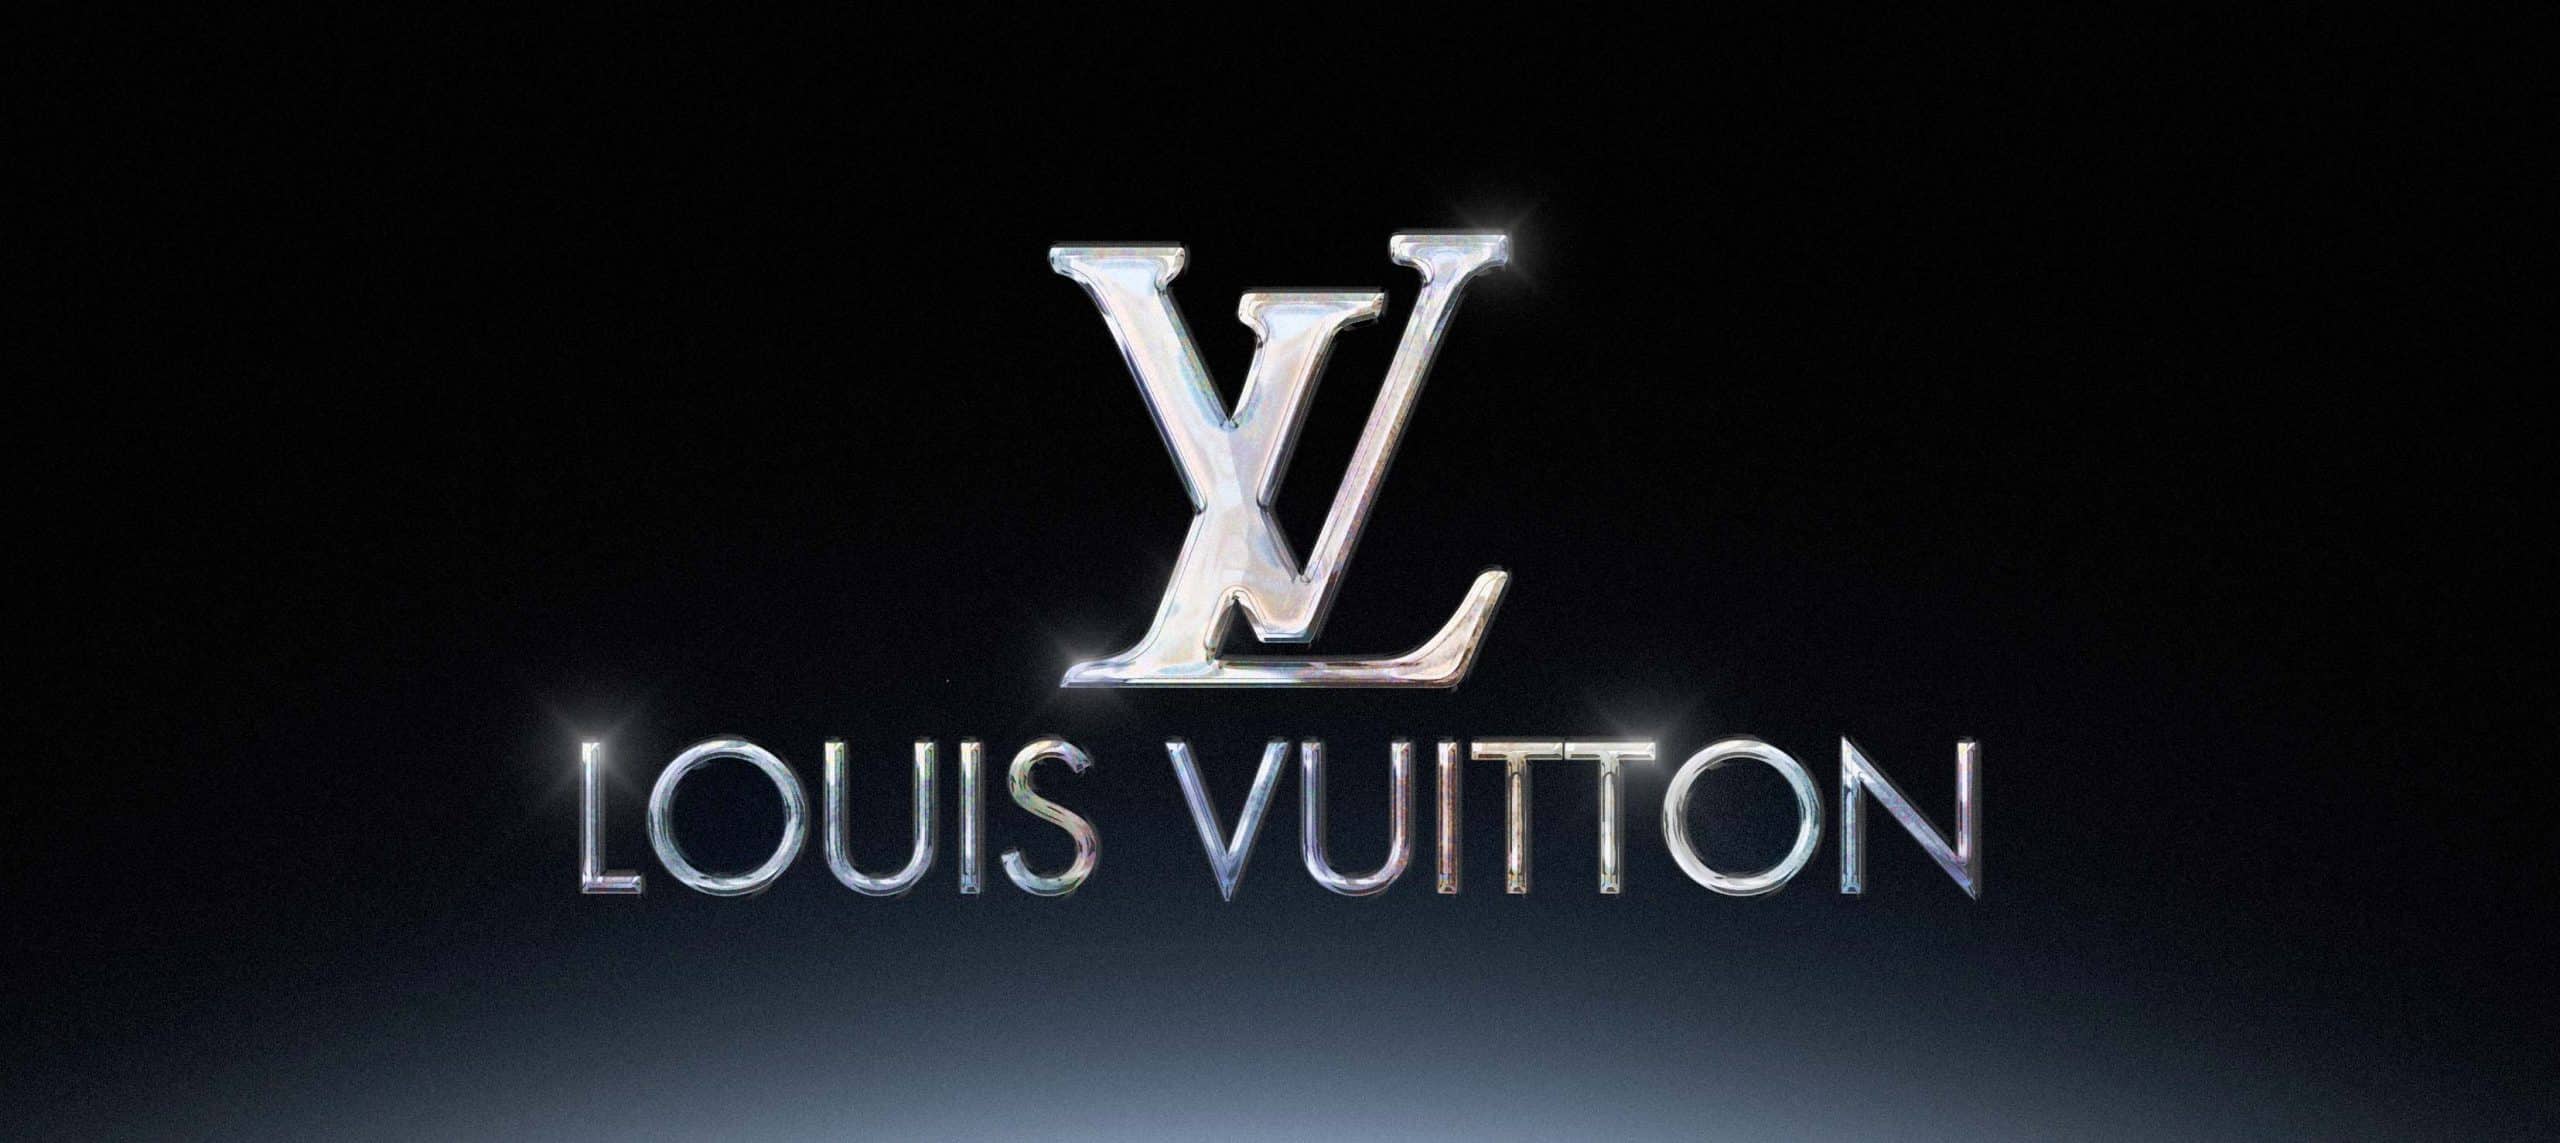 Comment Louis Vuitton se démarque?